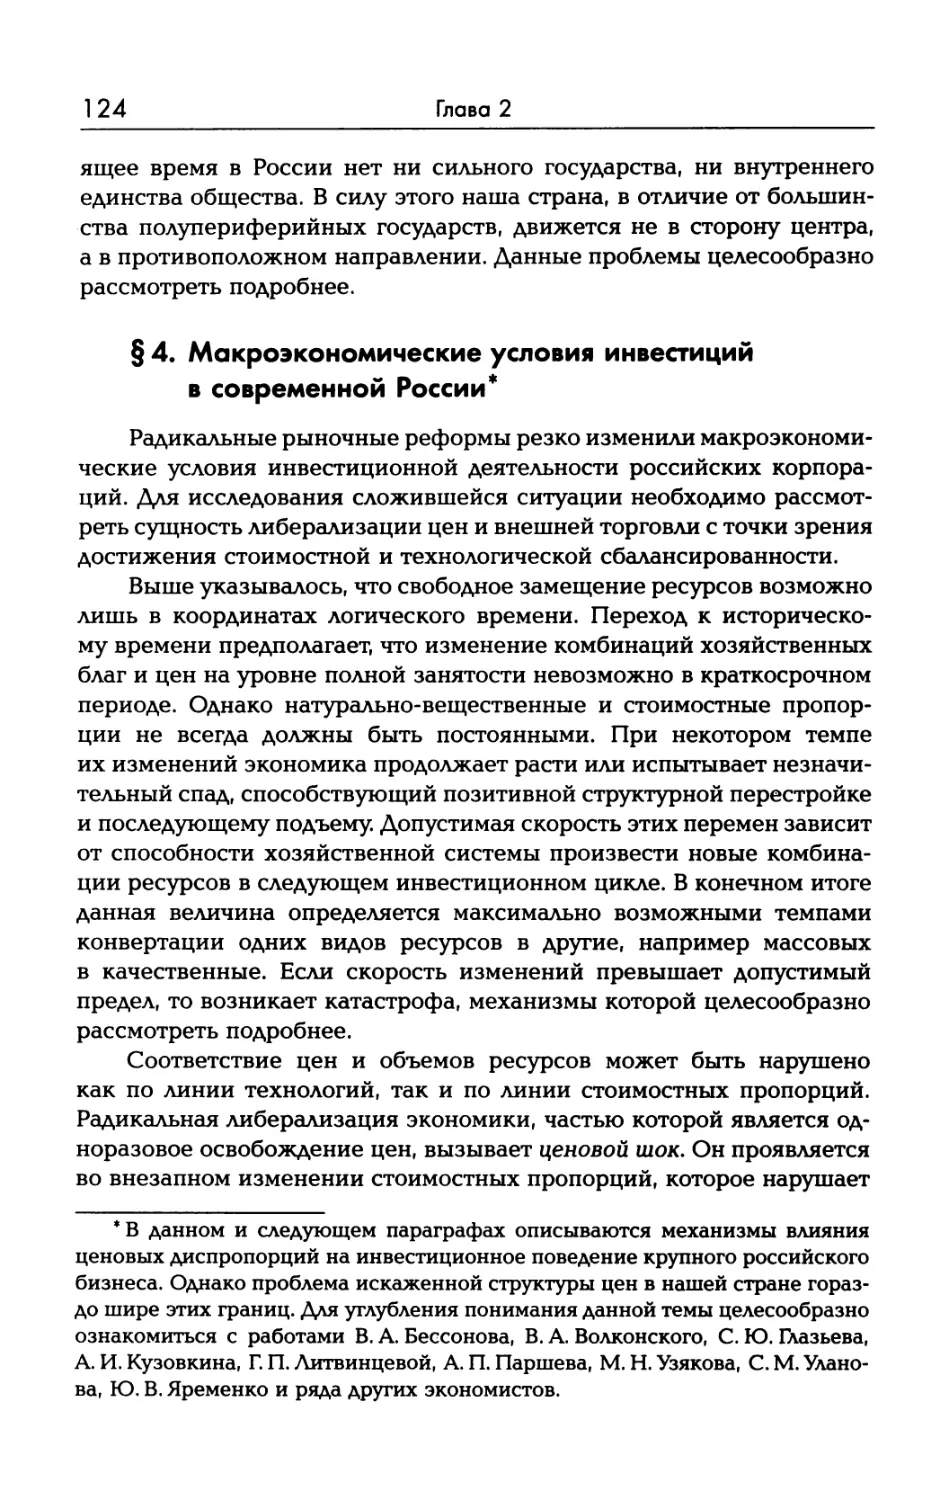 § 4. Макроэкономические условия инвестиций в современной России